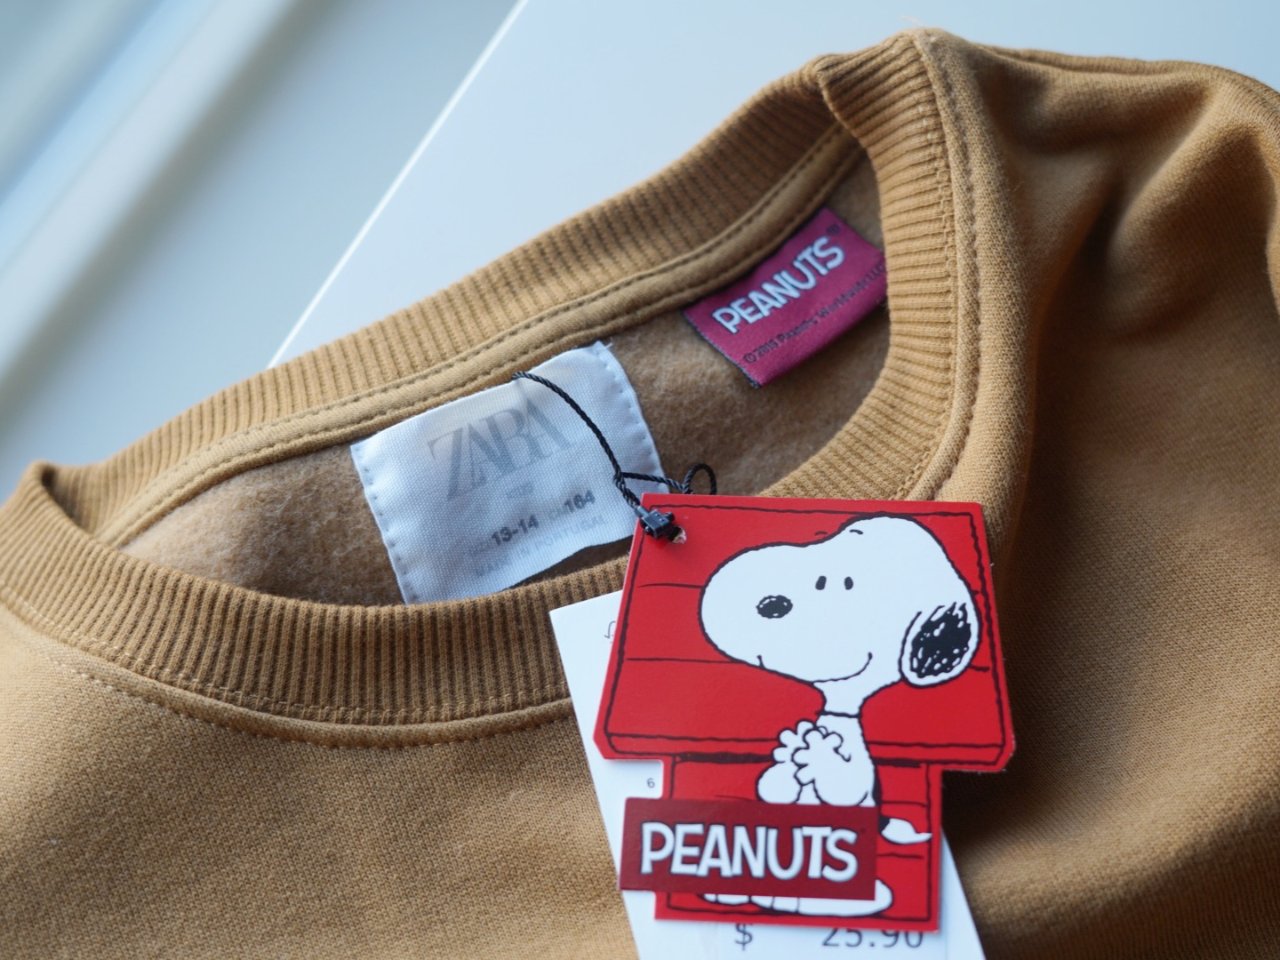 Peanuts,Zara